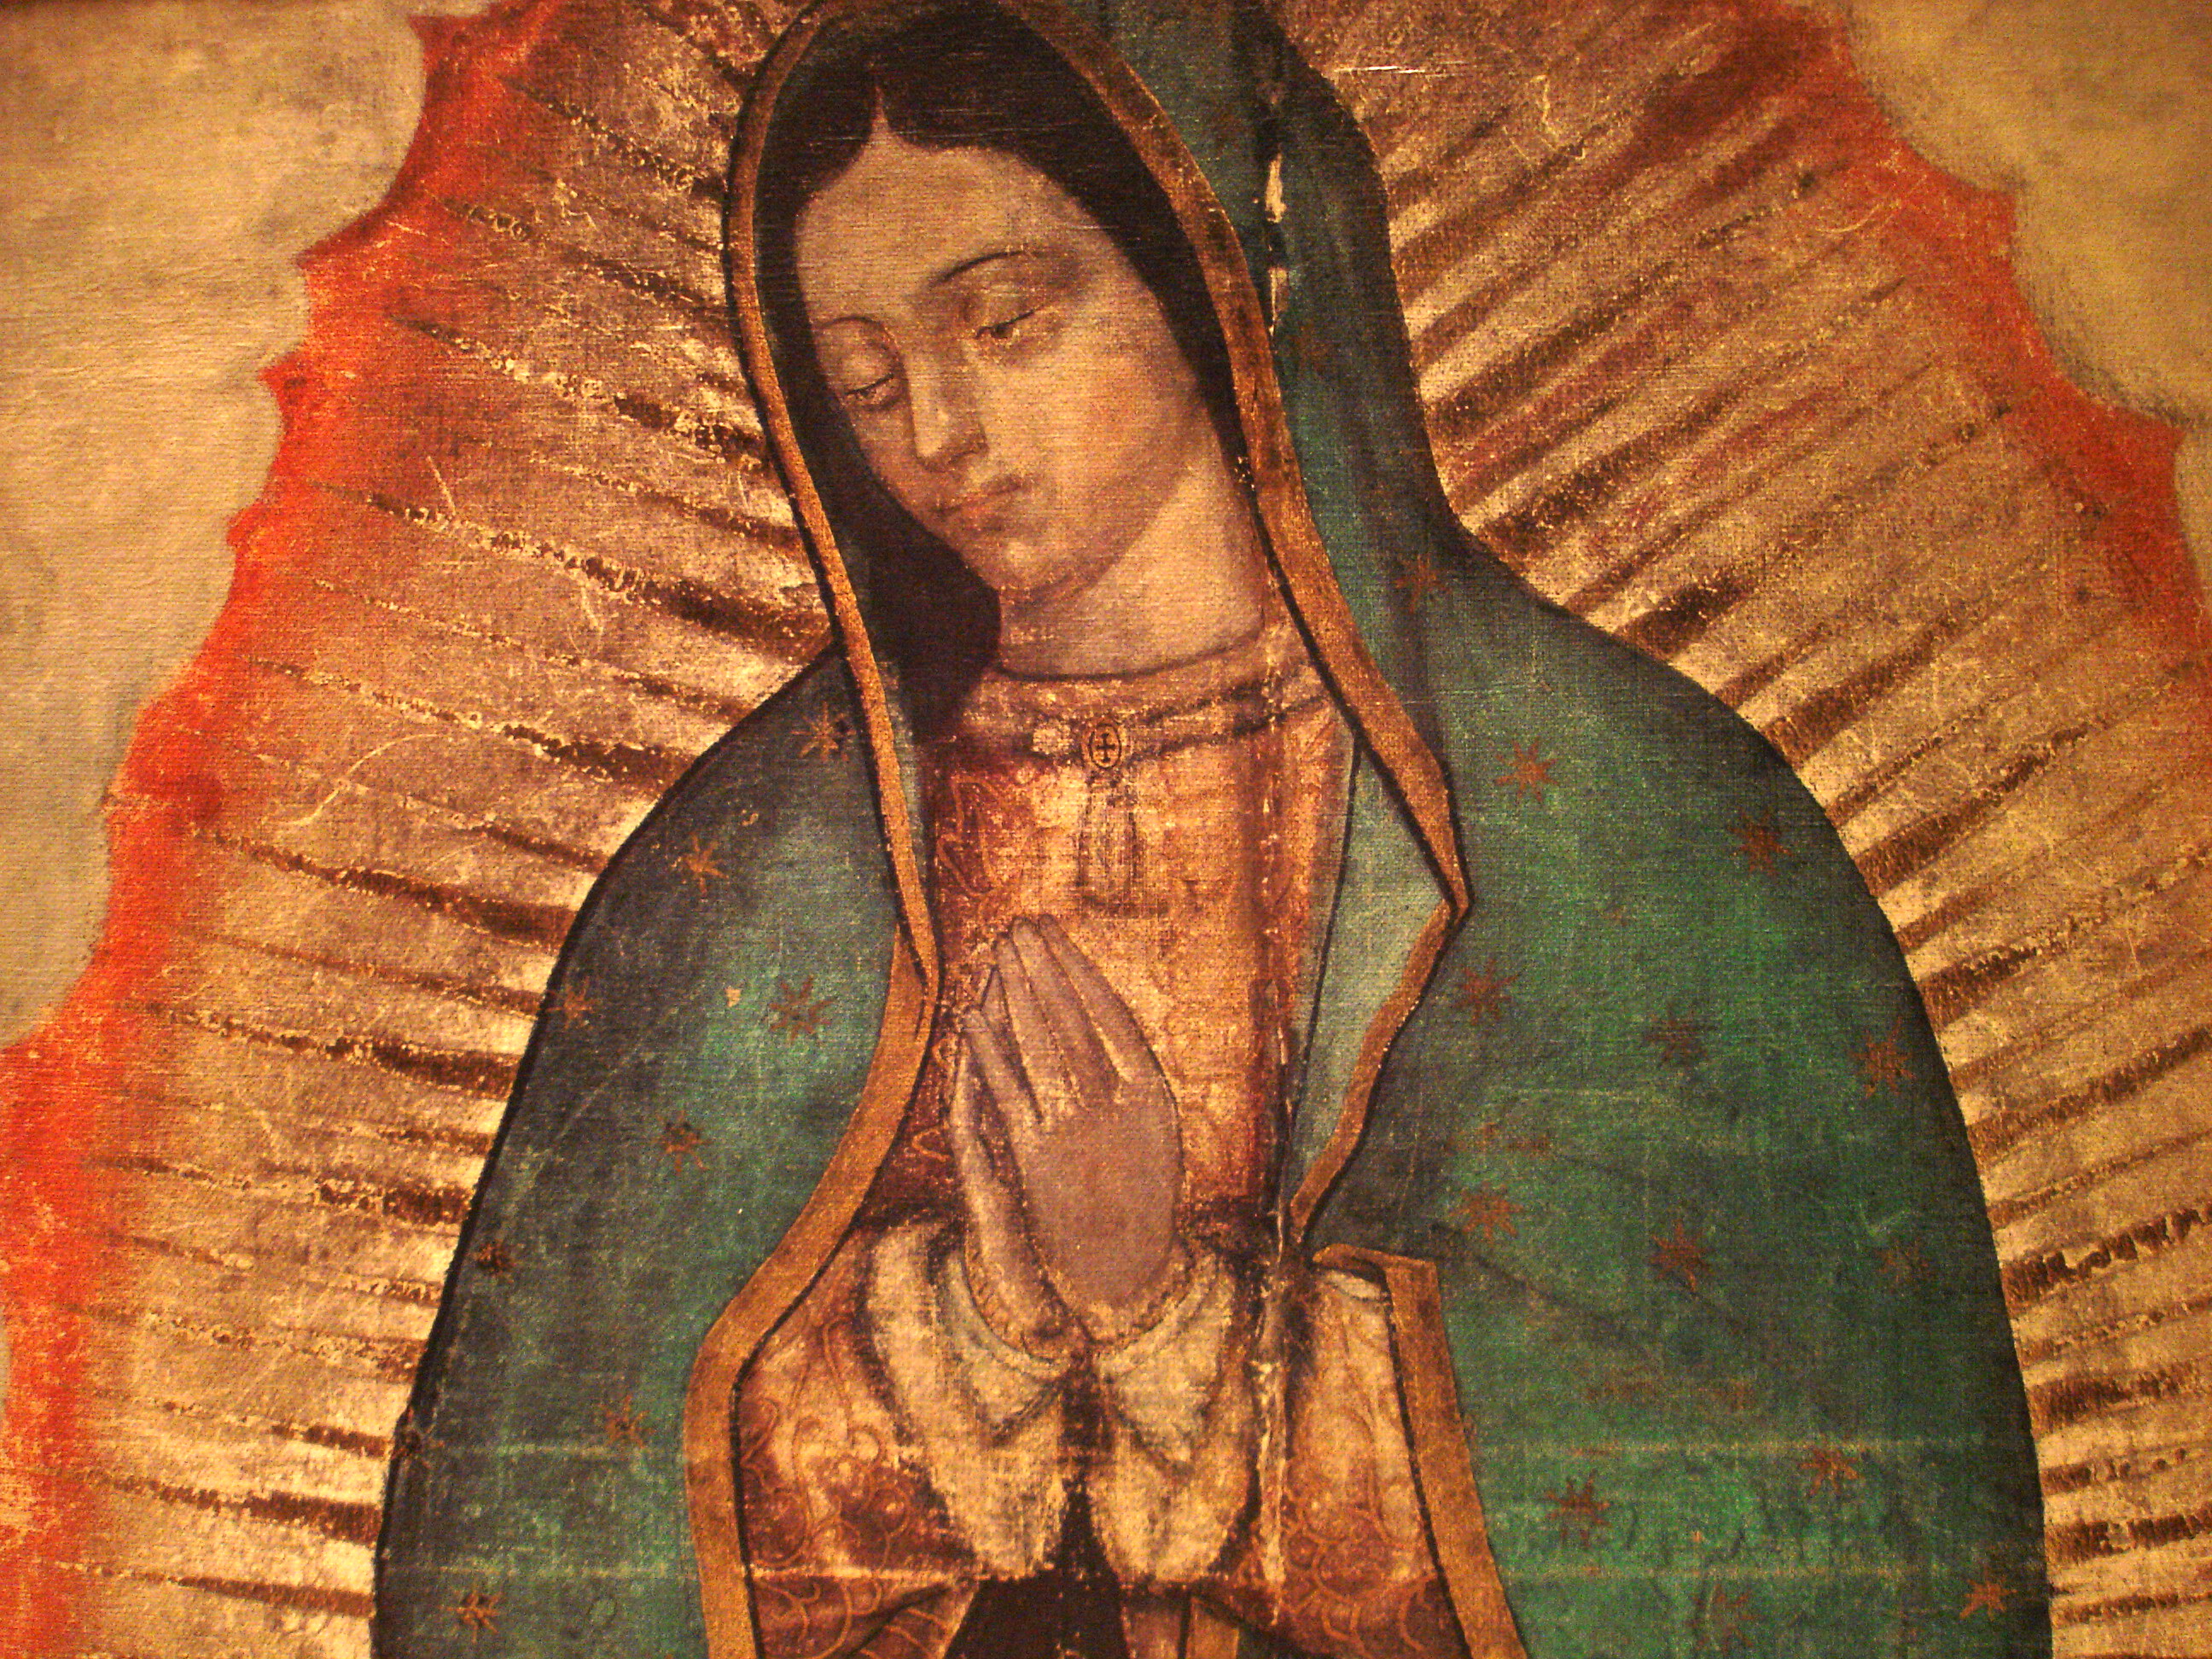 Imagenes de la virgen de Guadalupe | Imágenes chidas